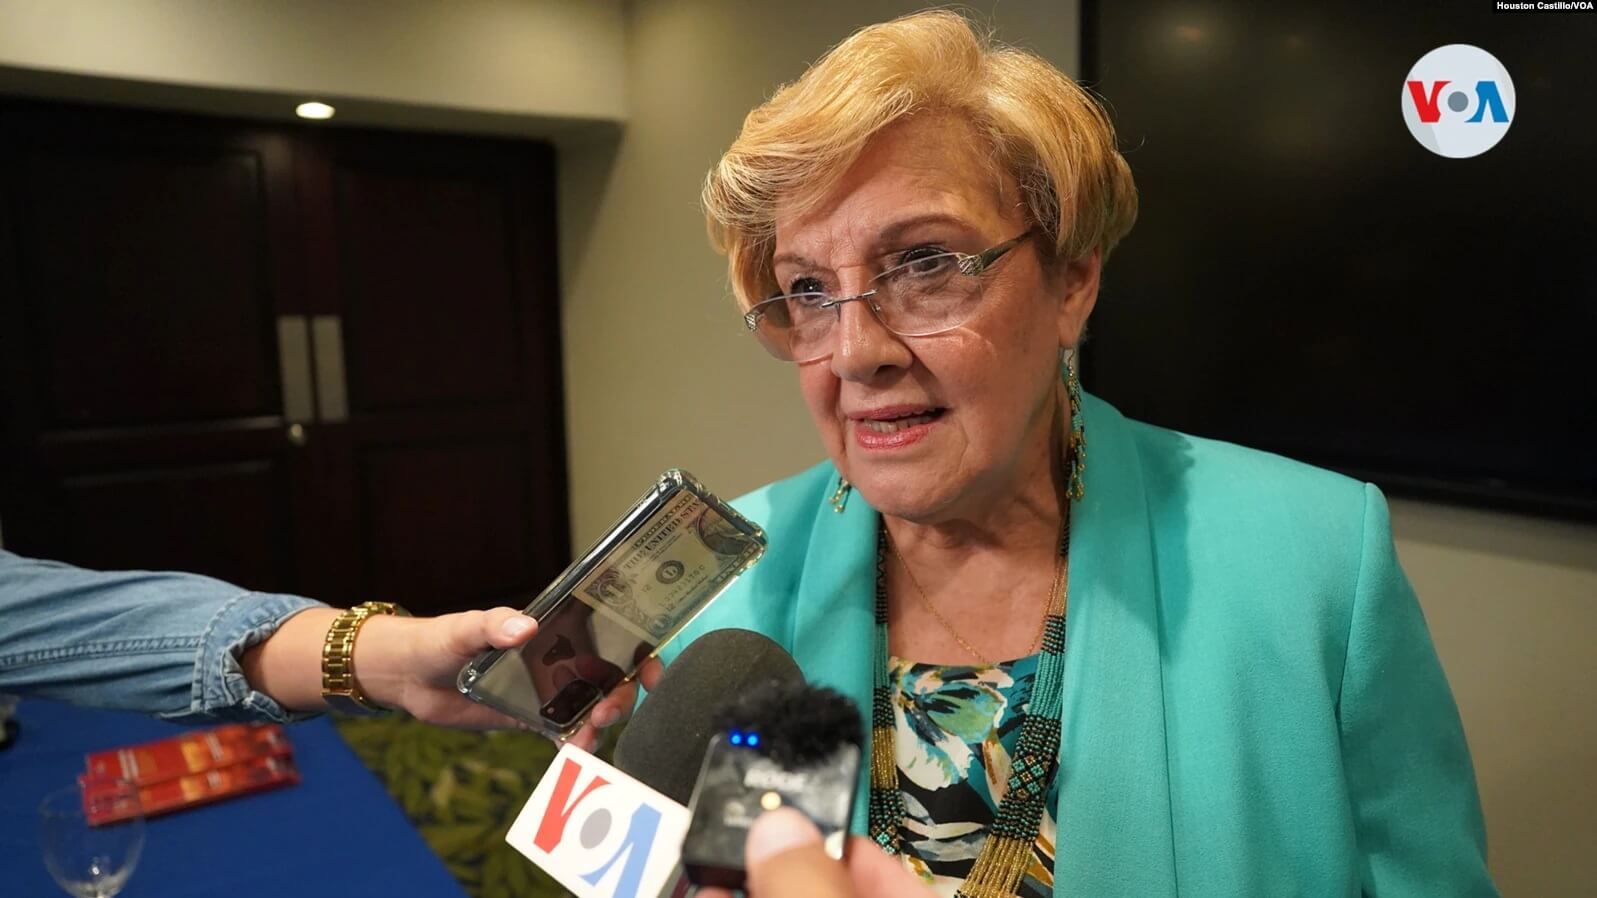 Esmeralda Arosemena de Troitiño, relatora de la CIDH para Venezuela y Nicaragua. [Foto Houston Castillo, VOA]